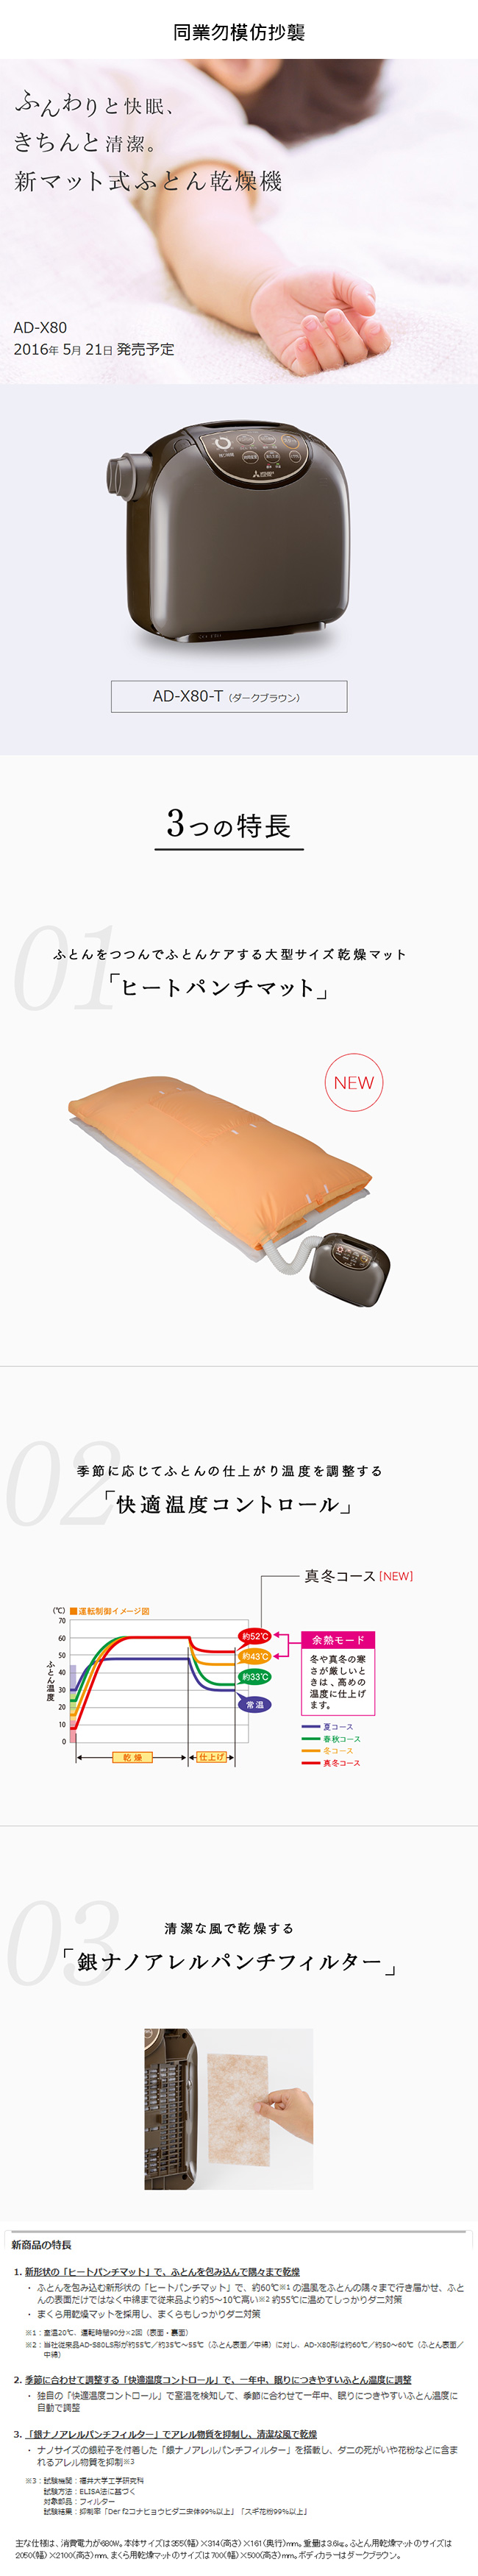 日本代購空運MITSUBISHI 三菱電機AD-X80 衣物棉被乾燥機烘乾機烘被機烘鞋機日本製| 配件王日本精品直營店| 樂天市場Rakuten